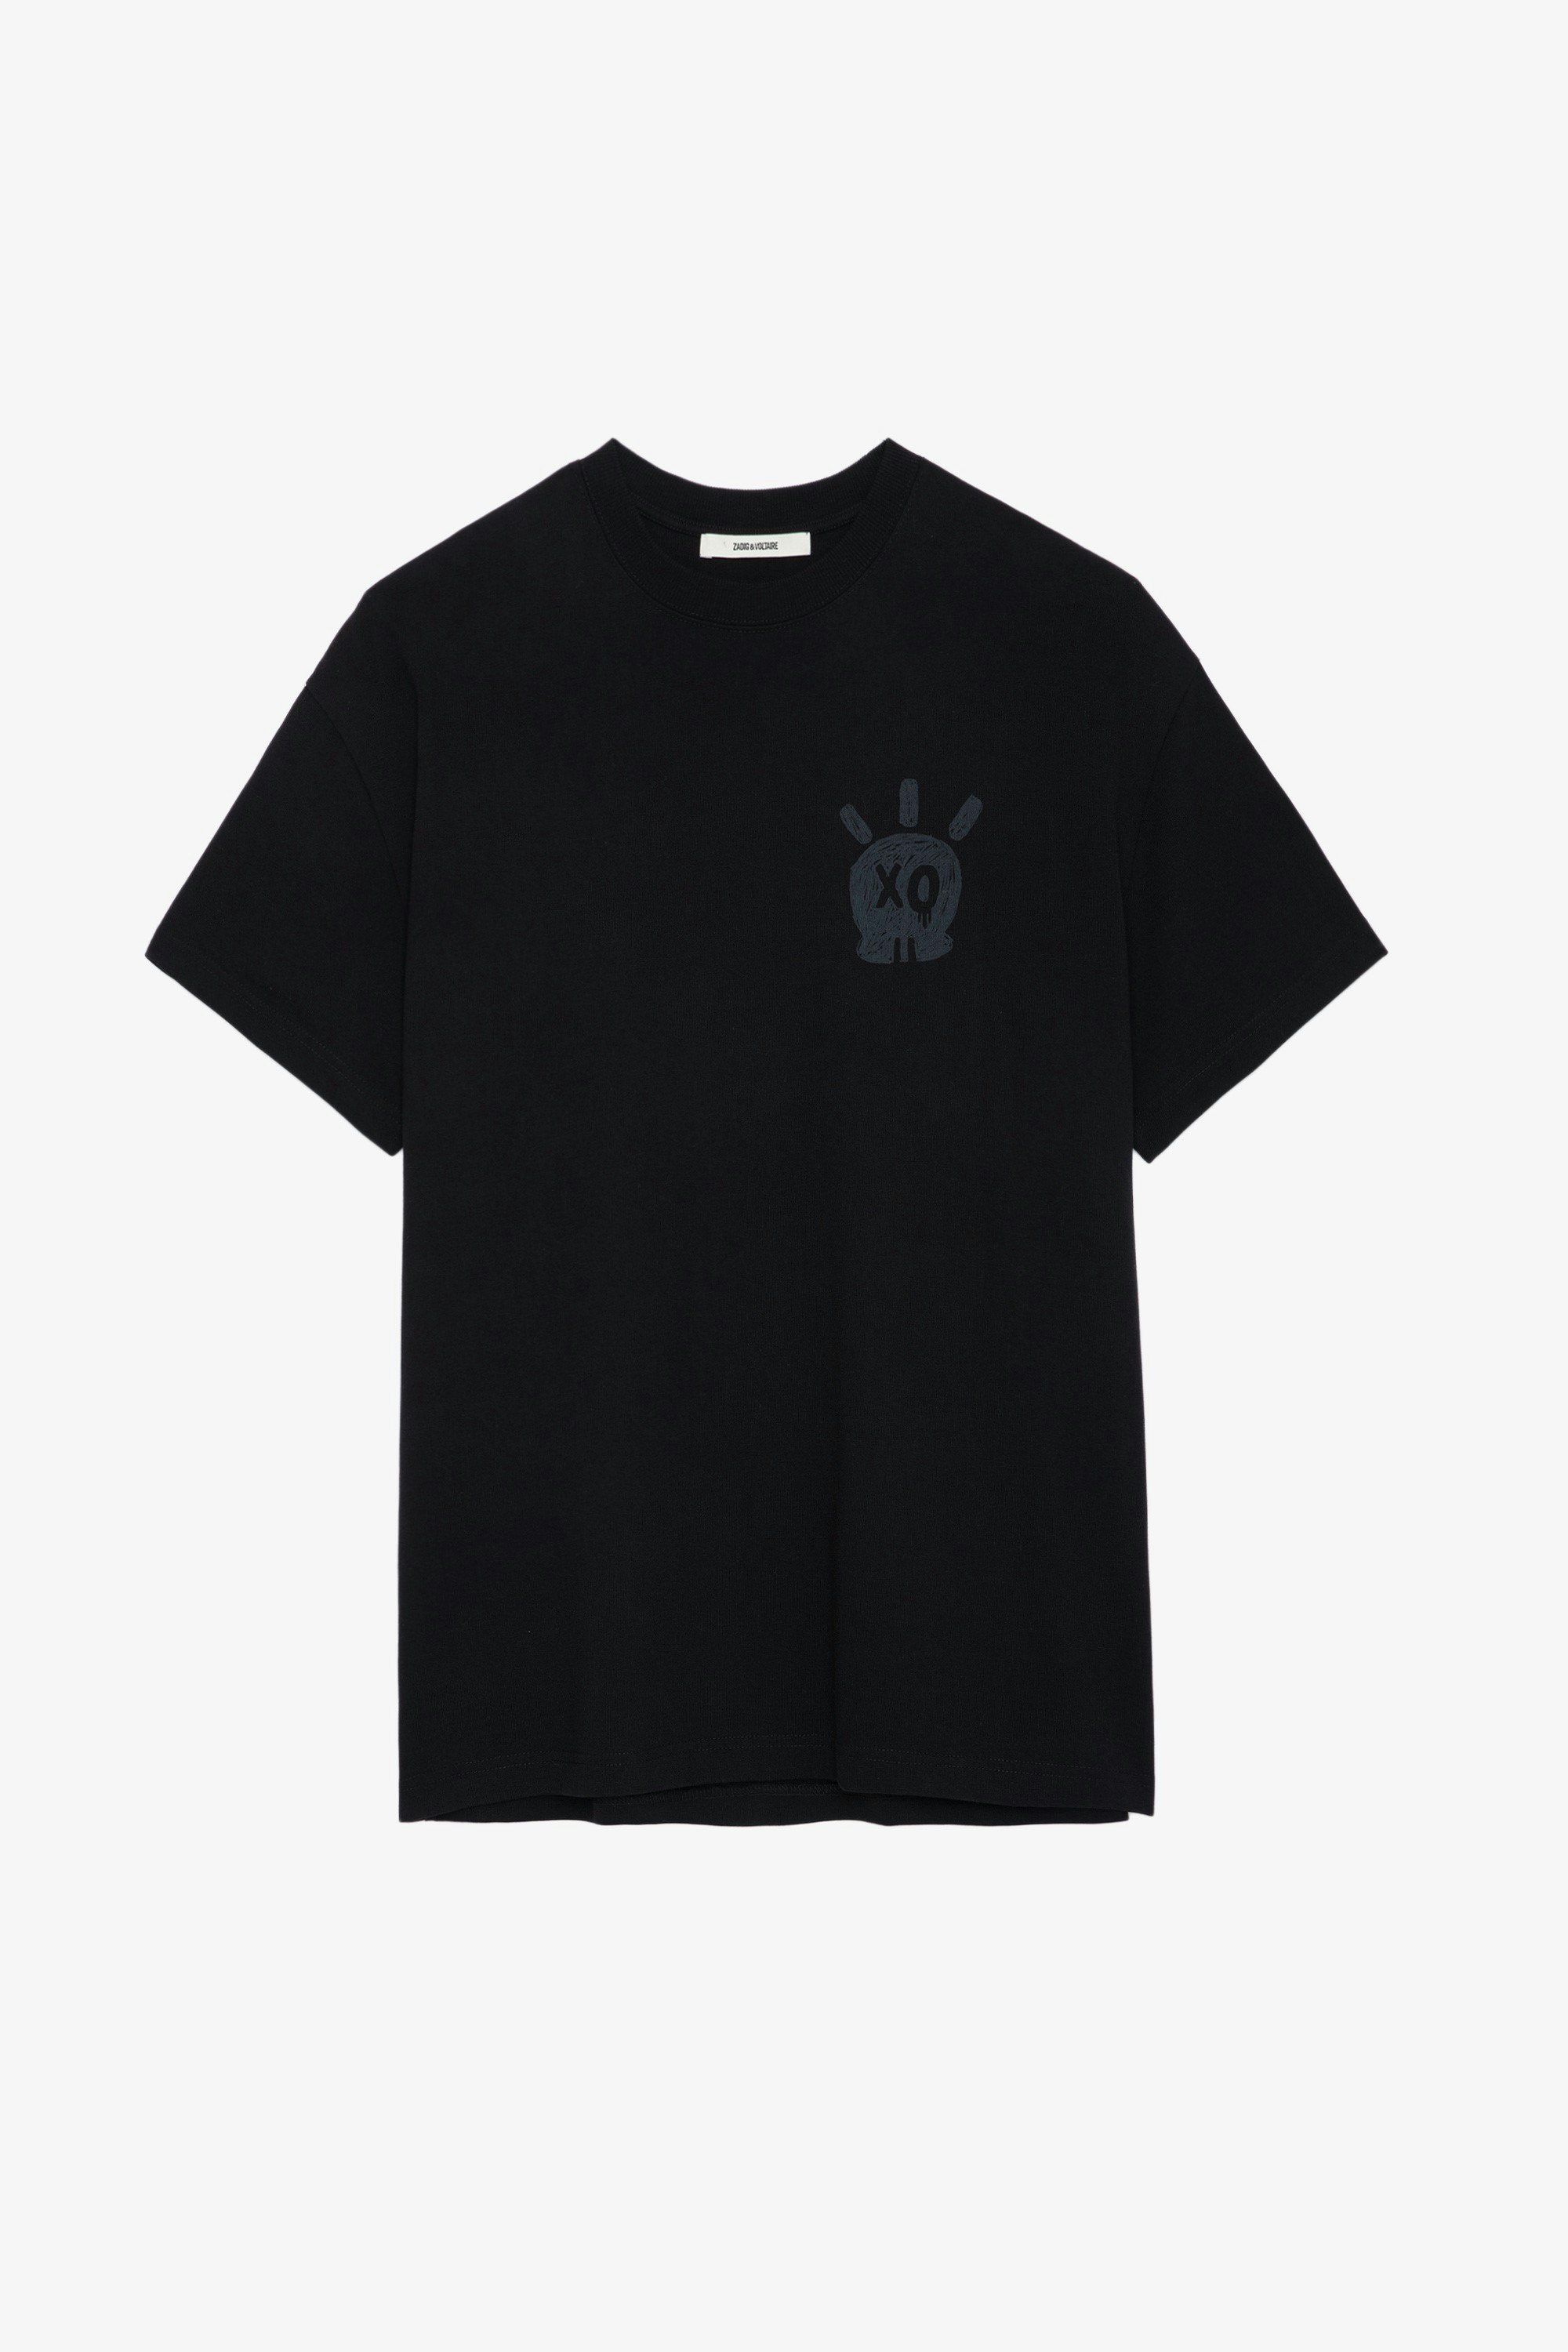 T-Shirt Teddy Skull - Schwarzes T-Shirt aus Baumwolle mit Rundhalsausschnitt, kurzen Ärmeln und Skull-XO-Print.